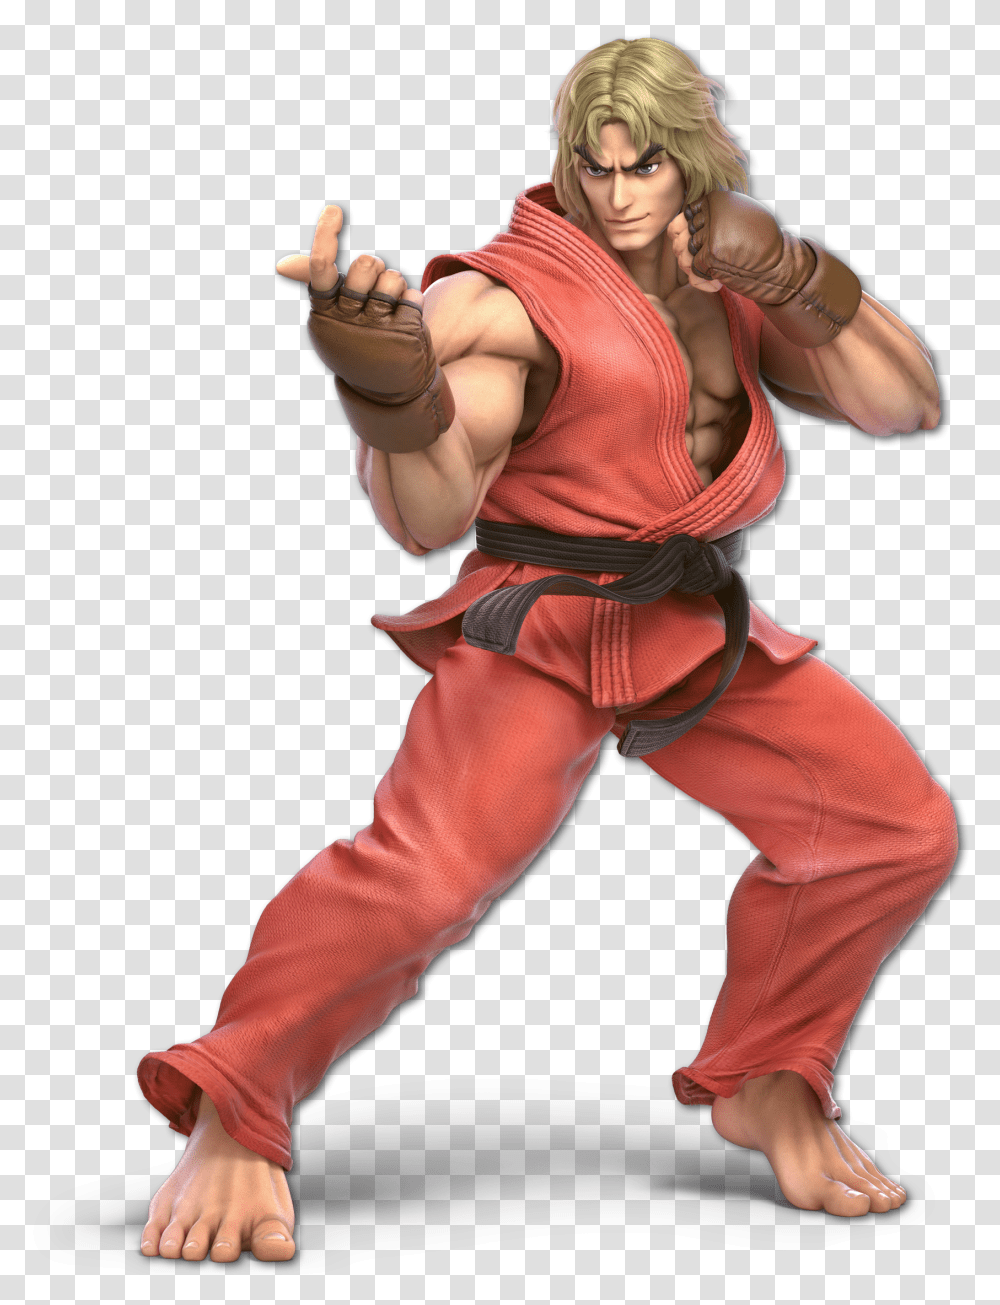 A Blond Haired Man Wearing An Orange Martial Arts Uniform Super Smash Bros Ultimate Ken Render, Person, Sport, Hand, Finger Transparent Png